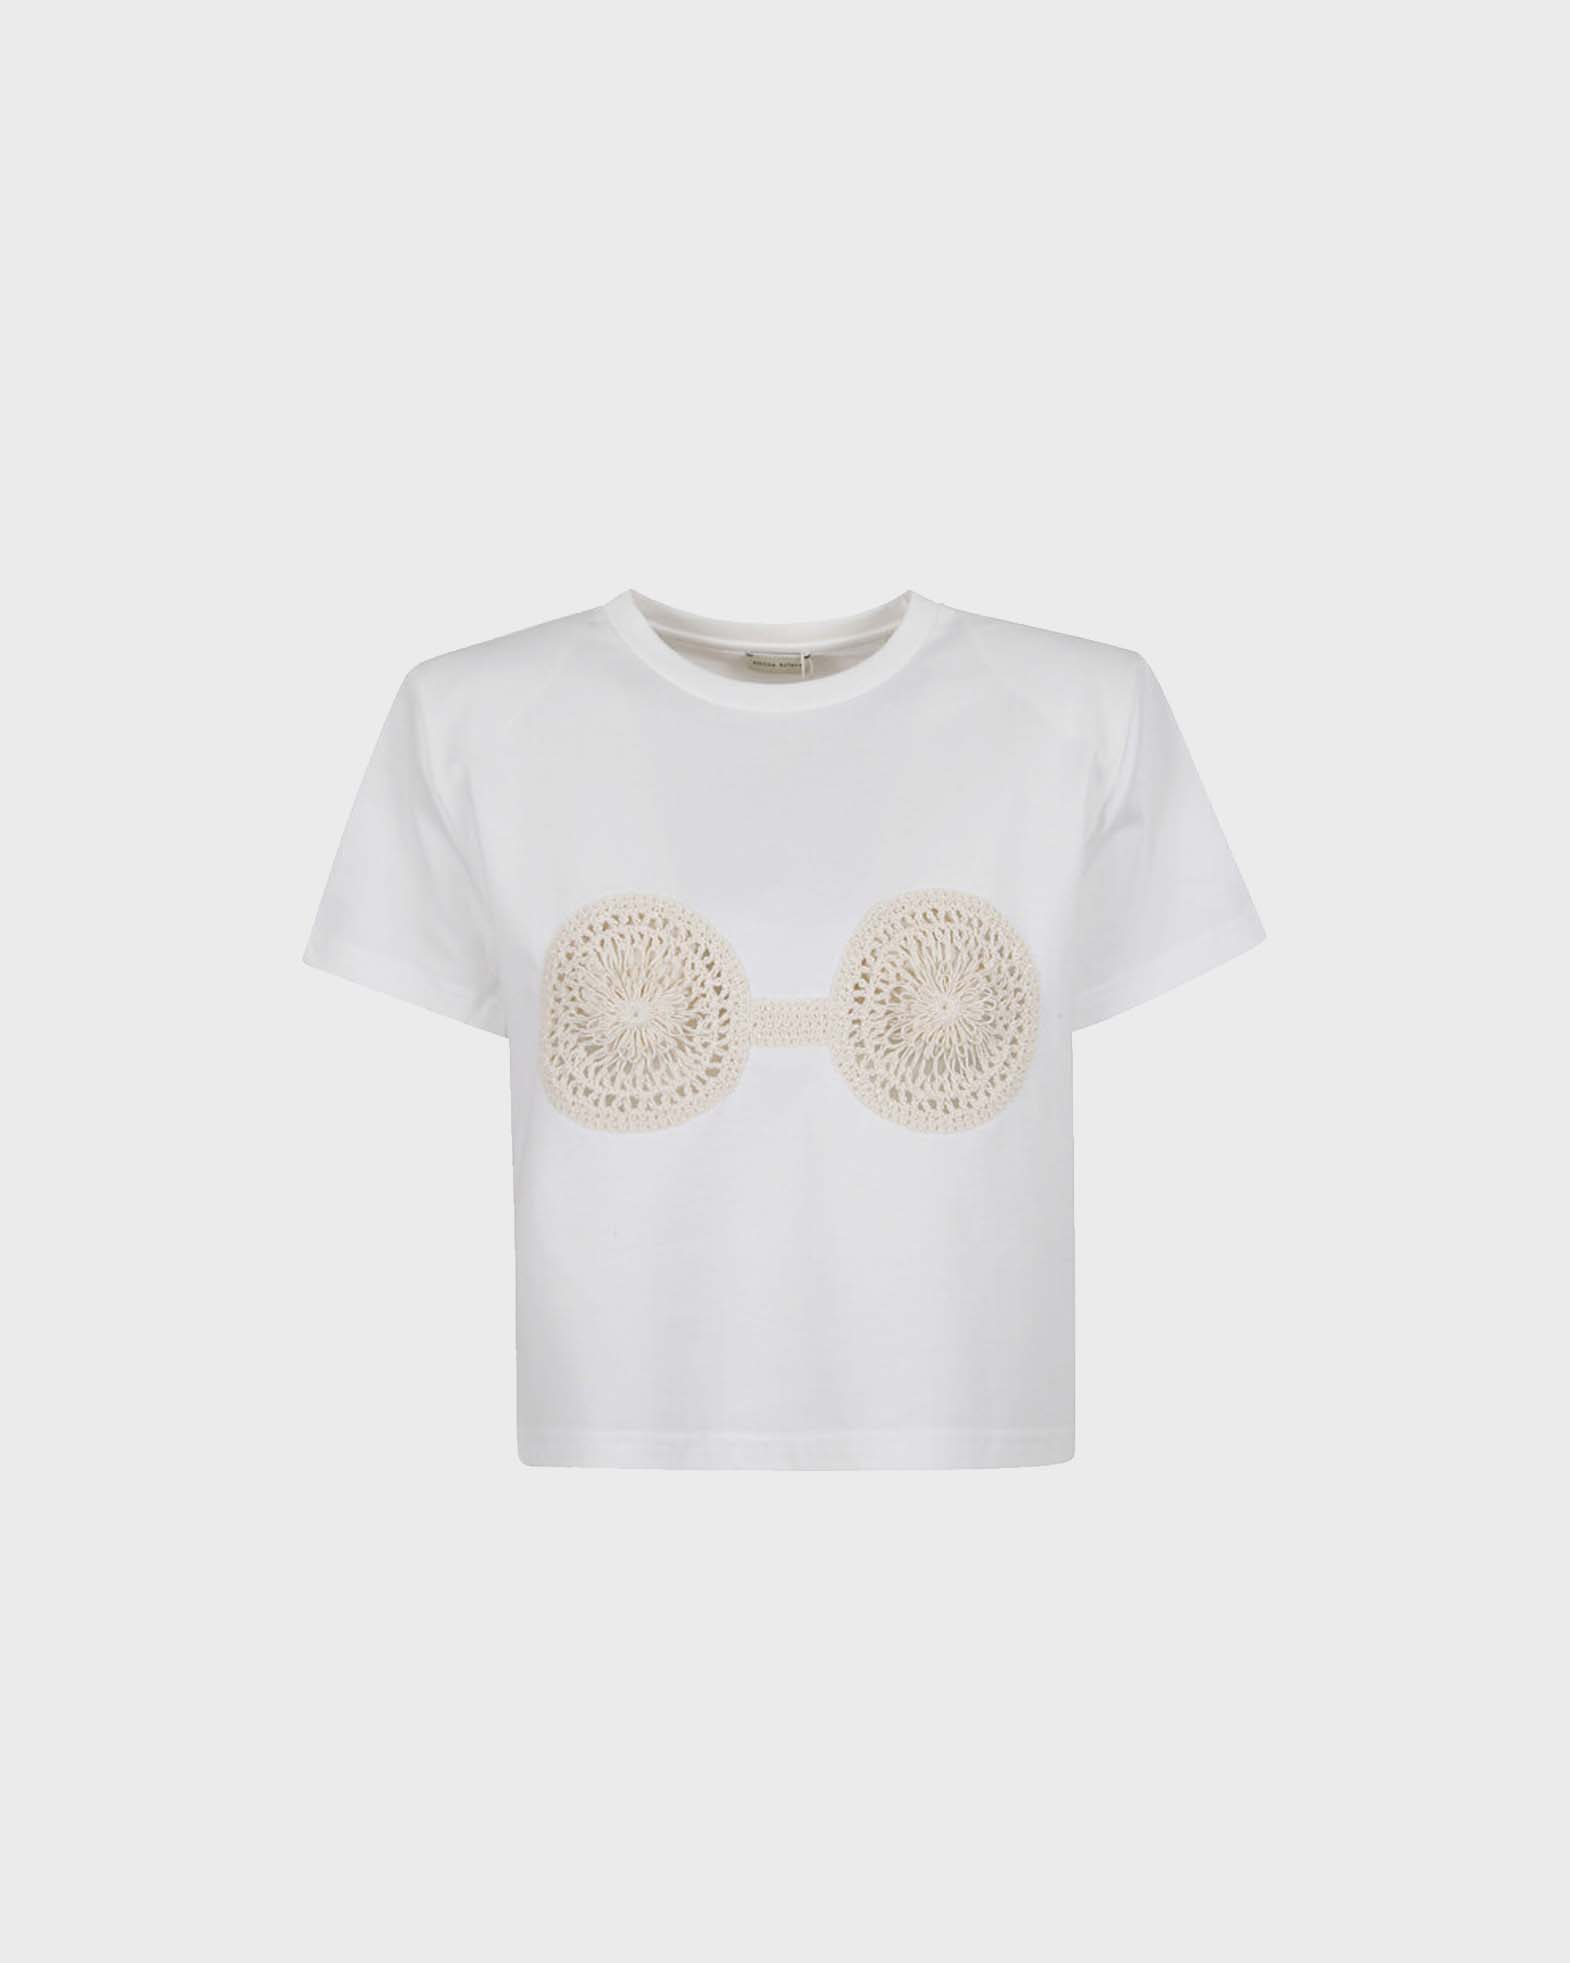 Magda Butrym T-Shirt Crochet White von Magda Butrym